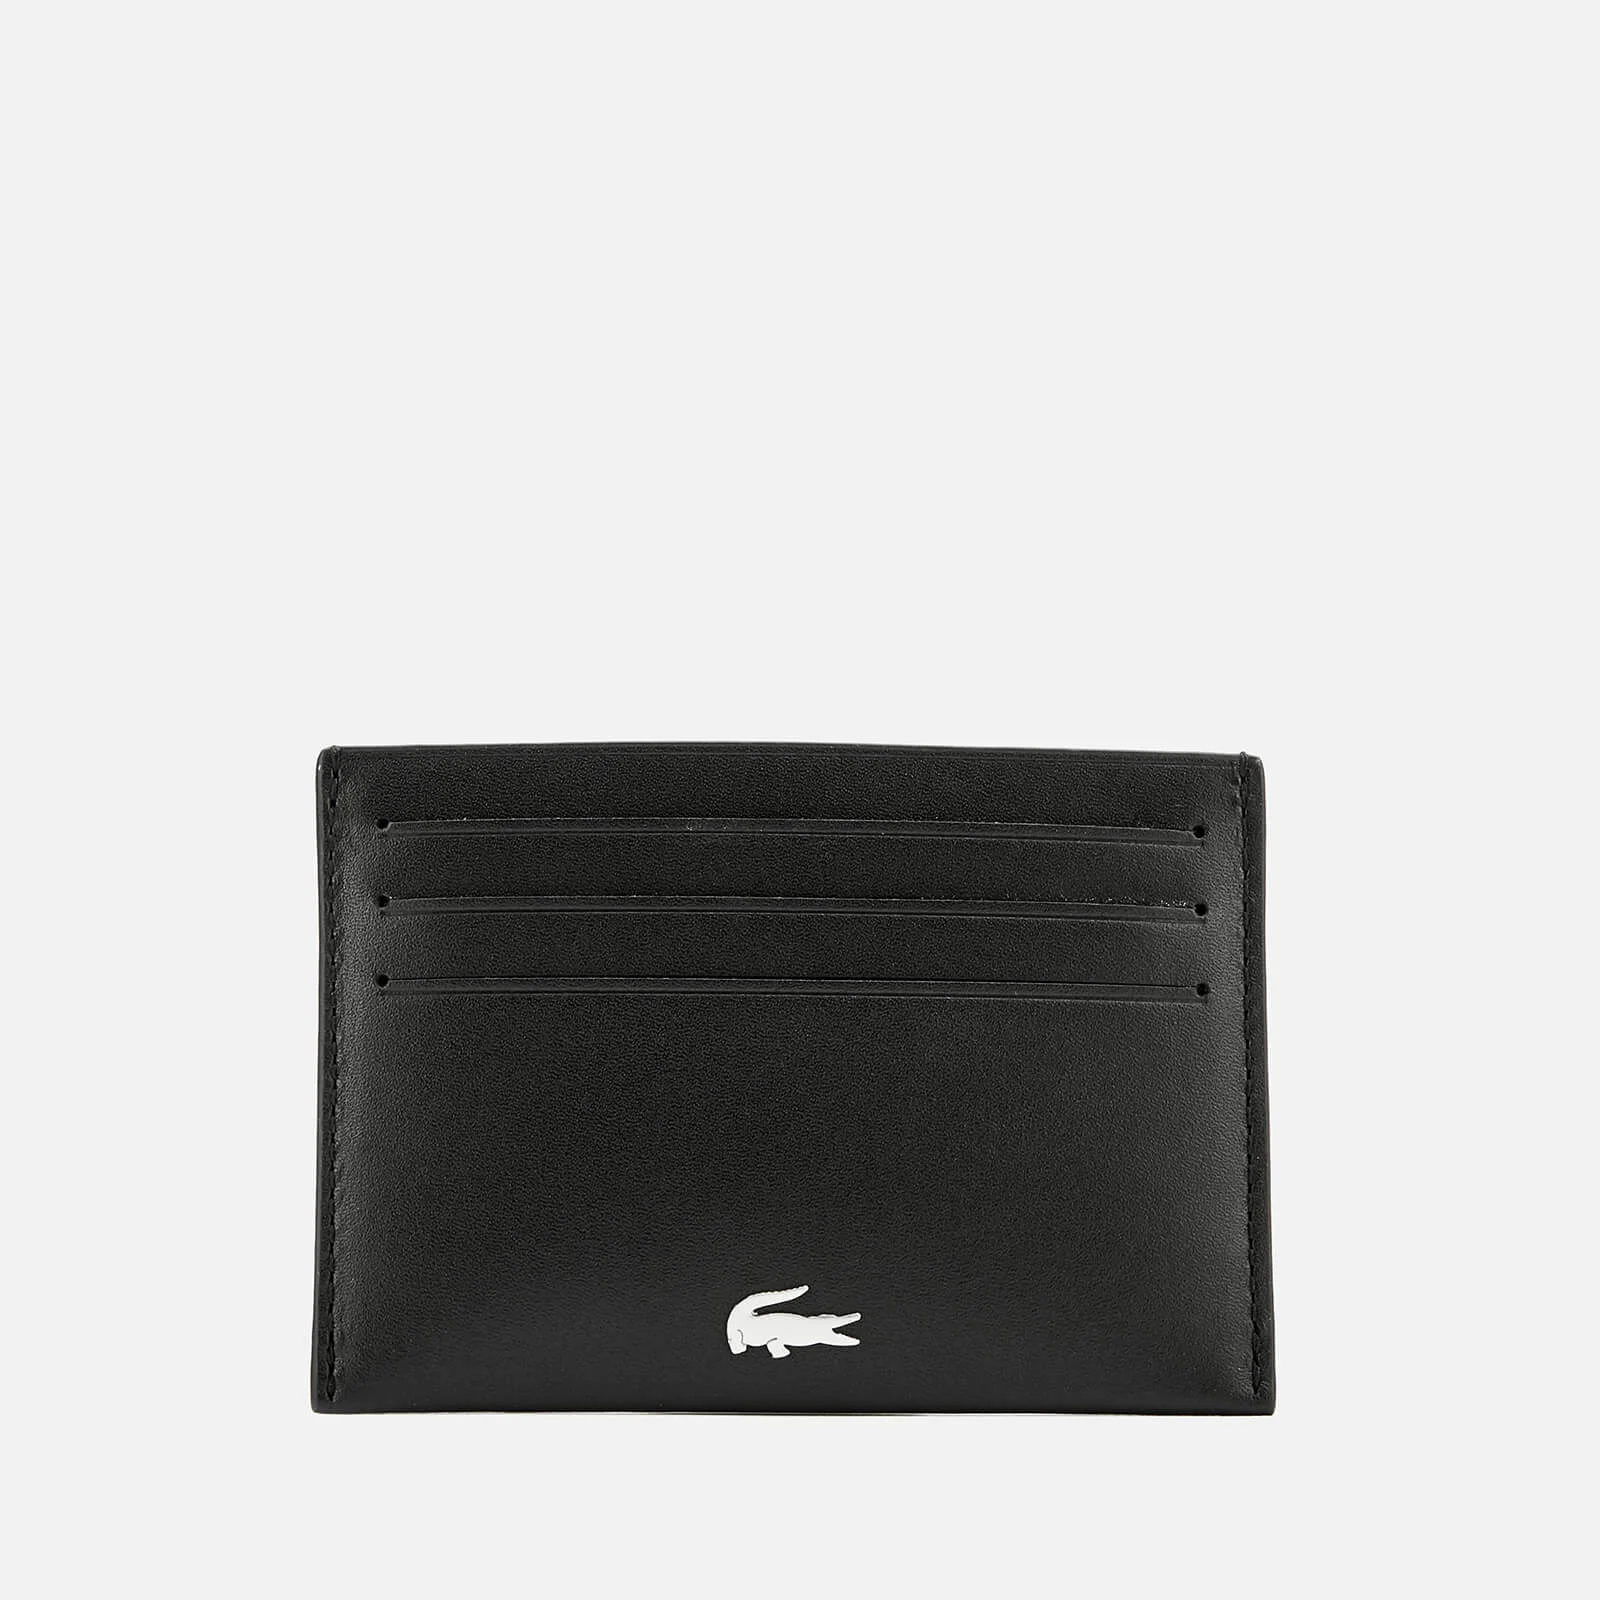 Lacoste Men's Credit Card Holder - Black Image 1